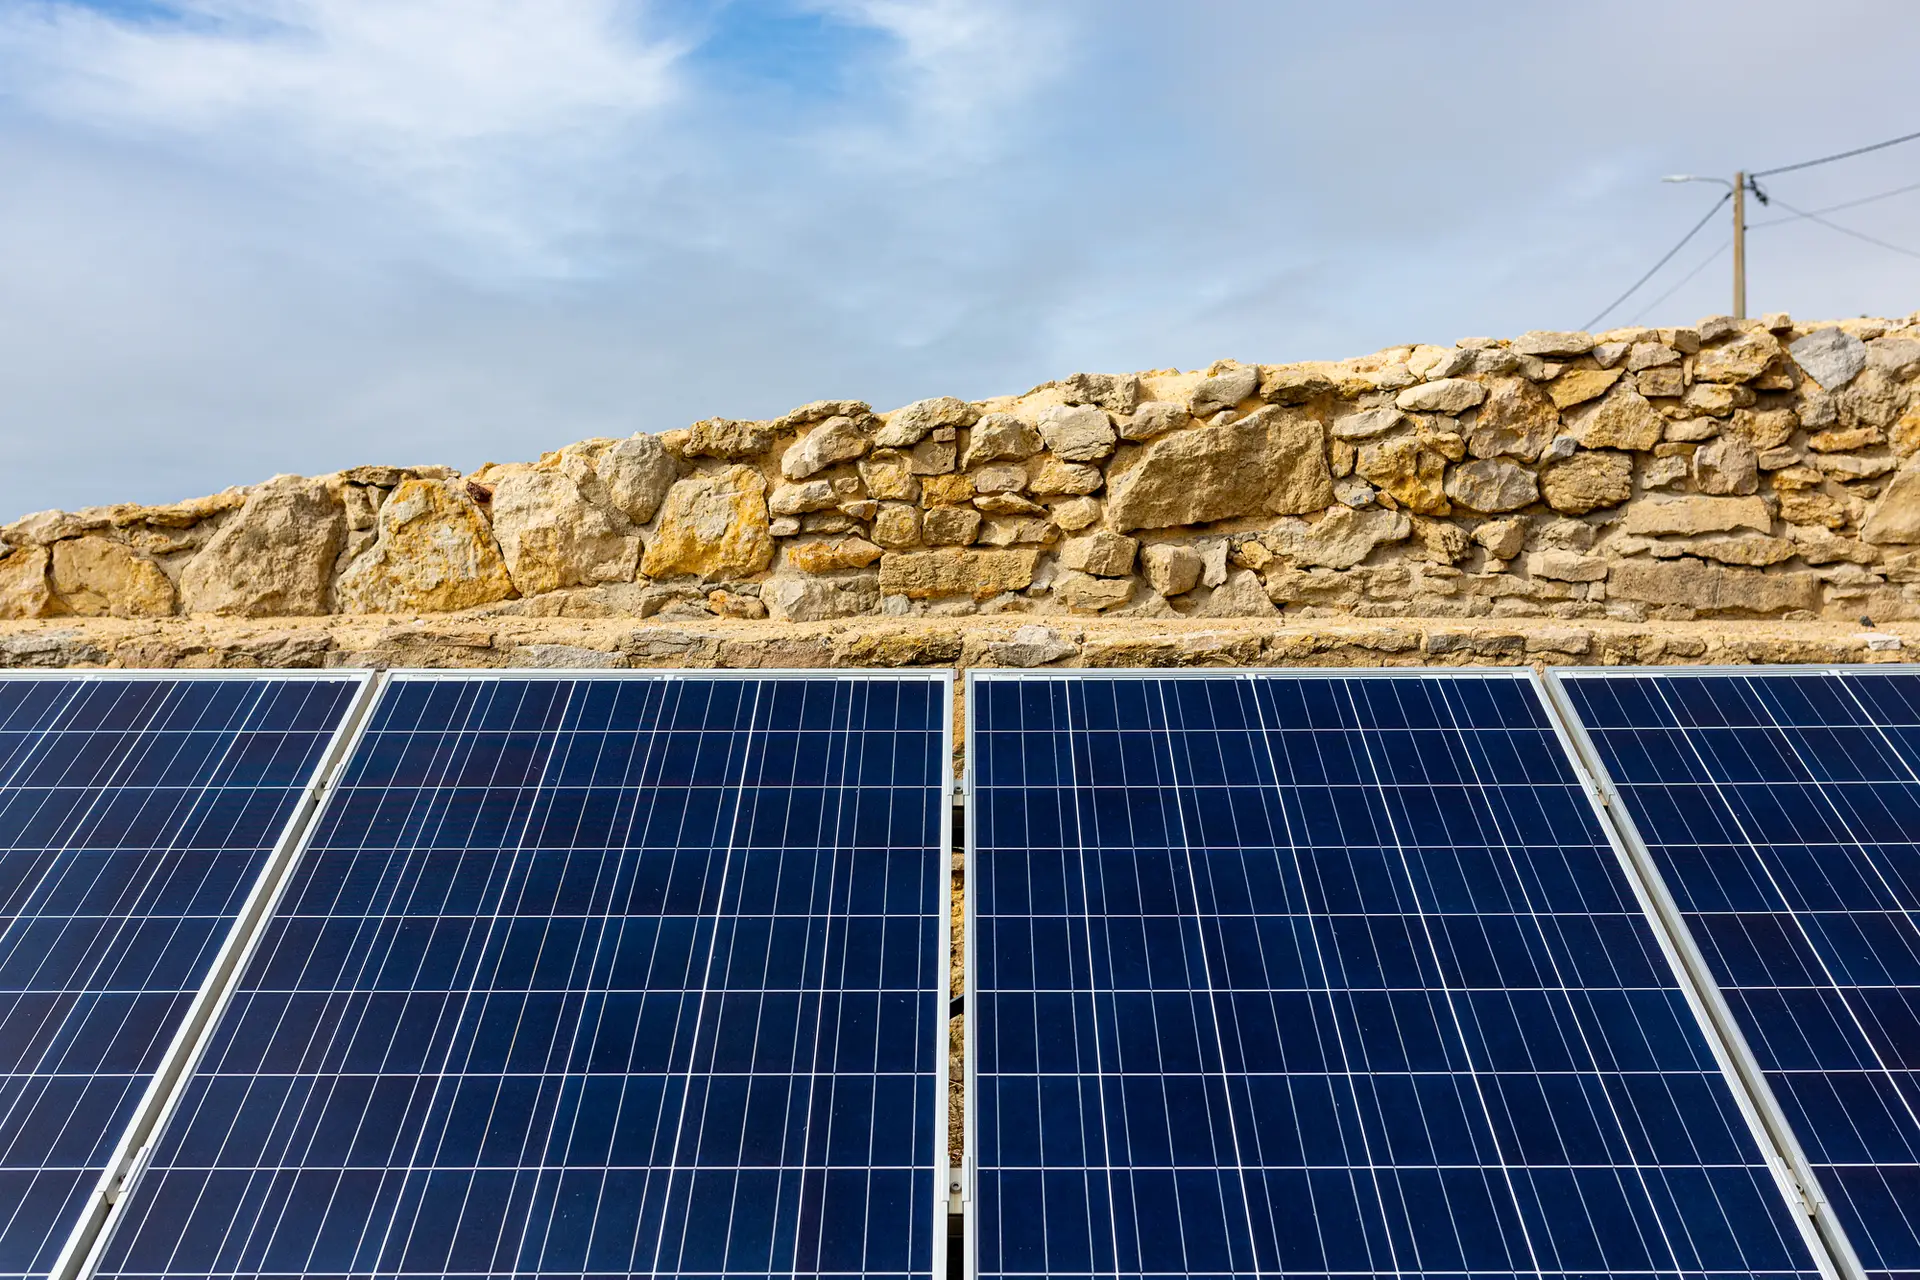 Obrigatoriedade de instalação de painéis solares em edifícios deve ser uma realidade até 2023